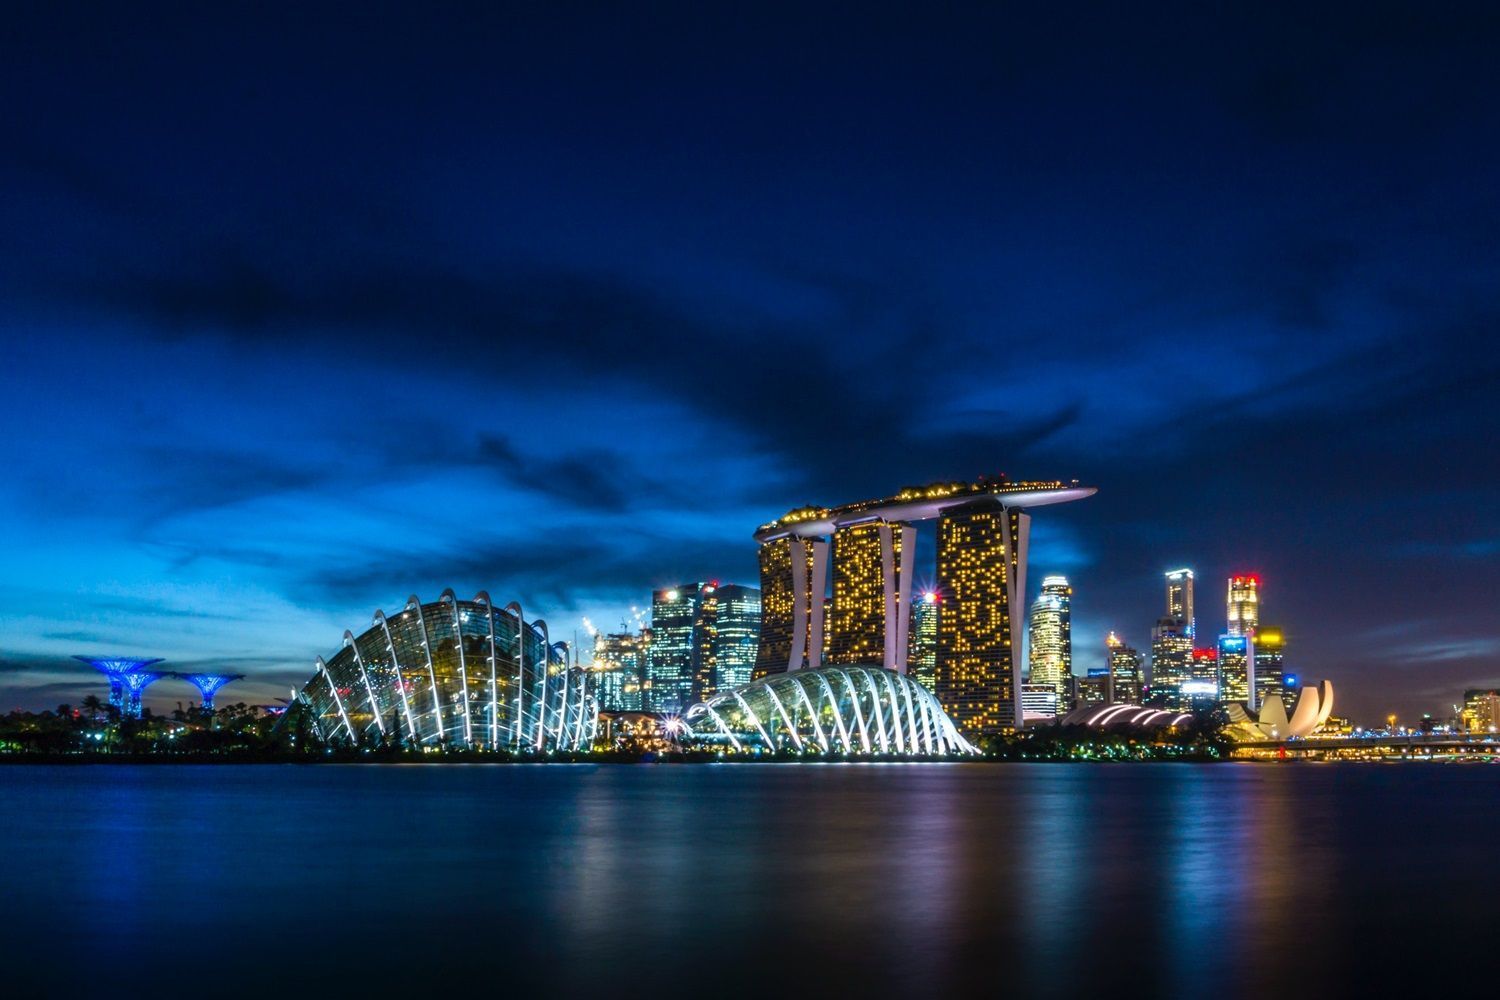 Singapore GDP